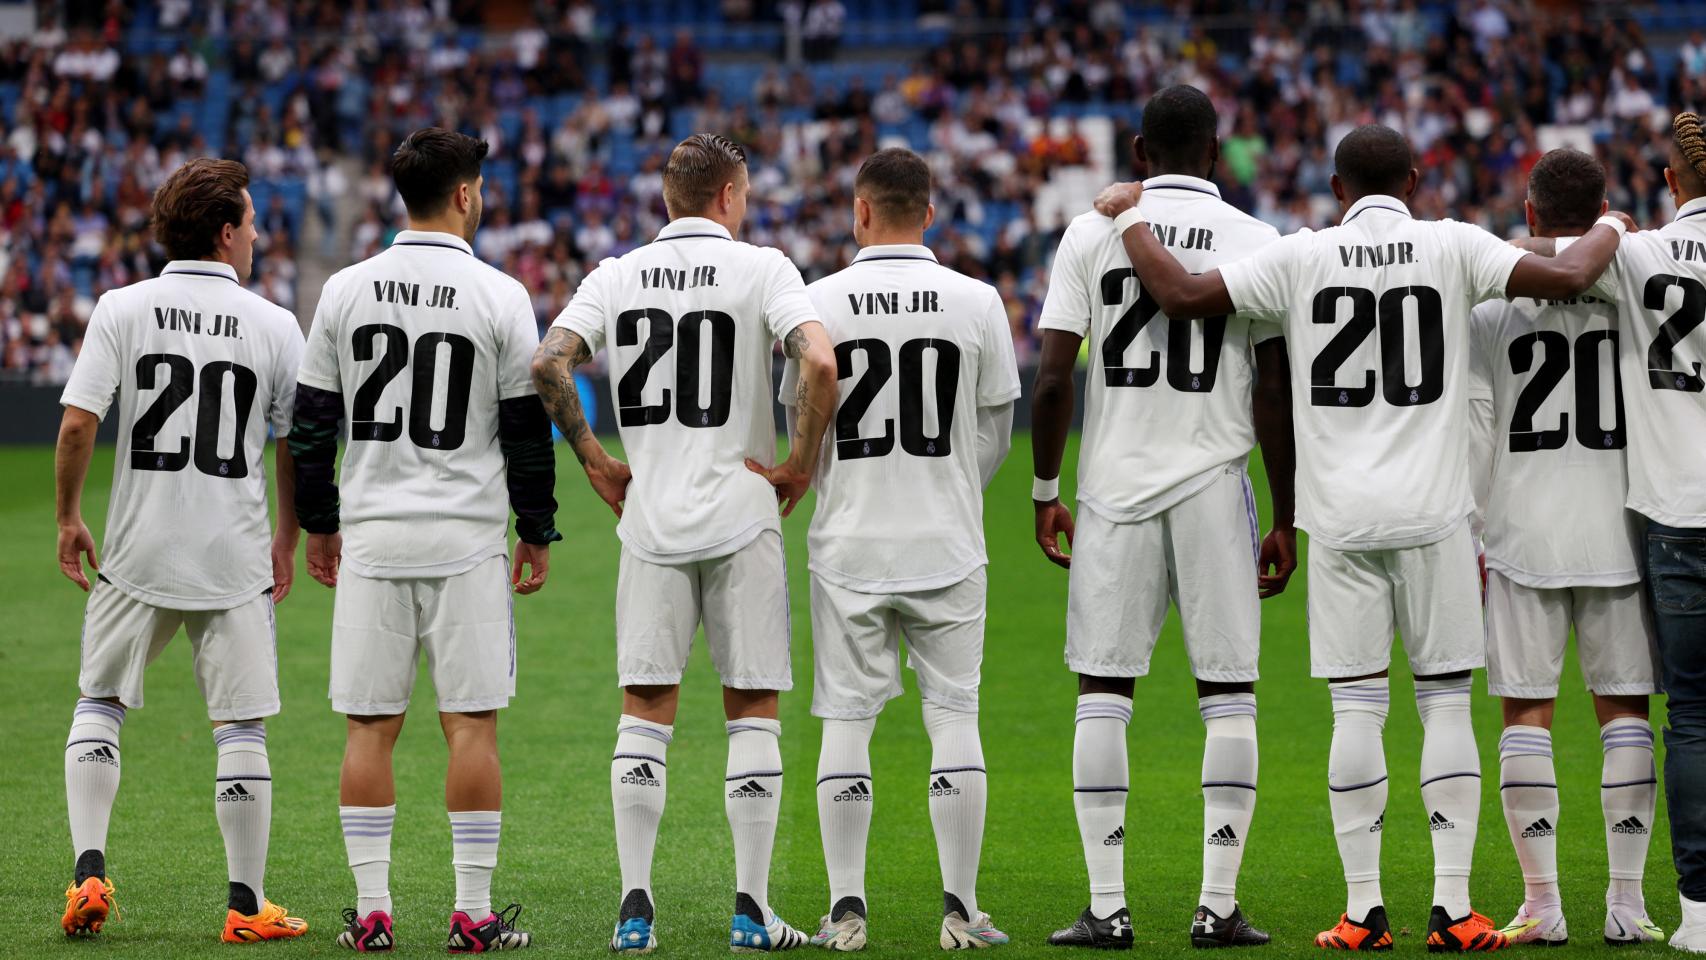 Los jugadores del Real Madrid, con la camiseta de Vinicius